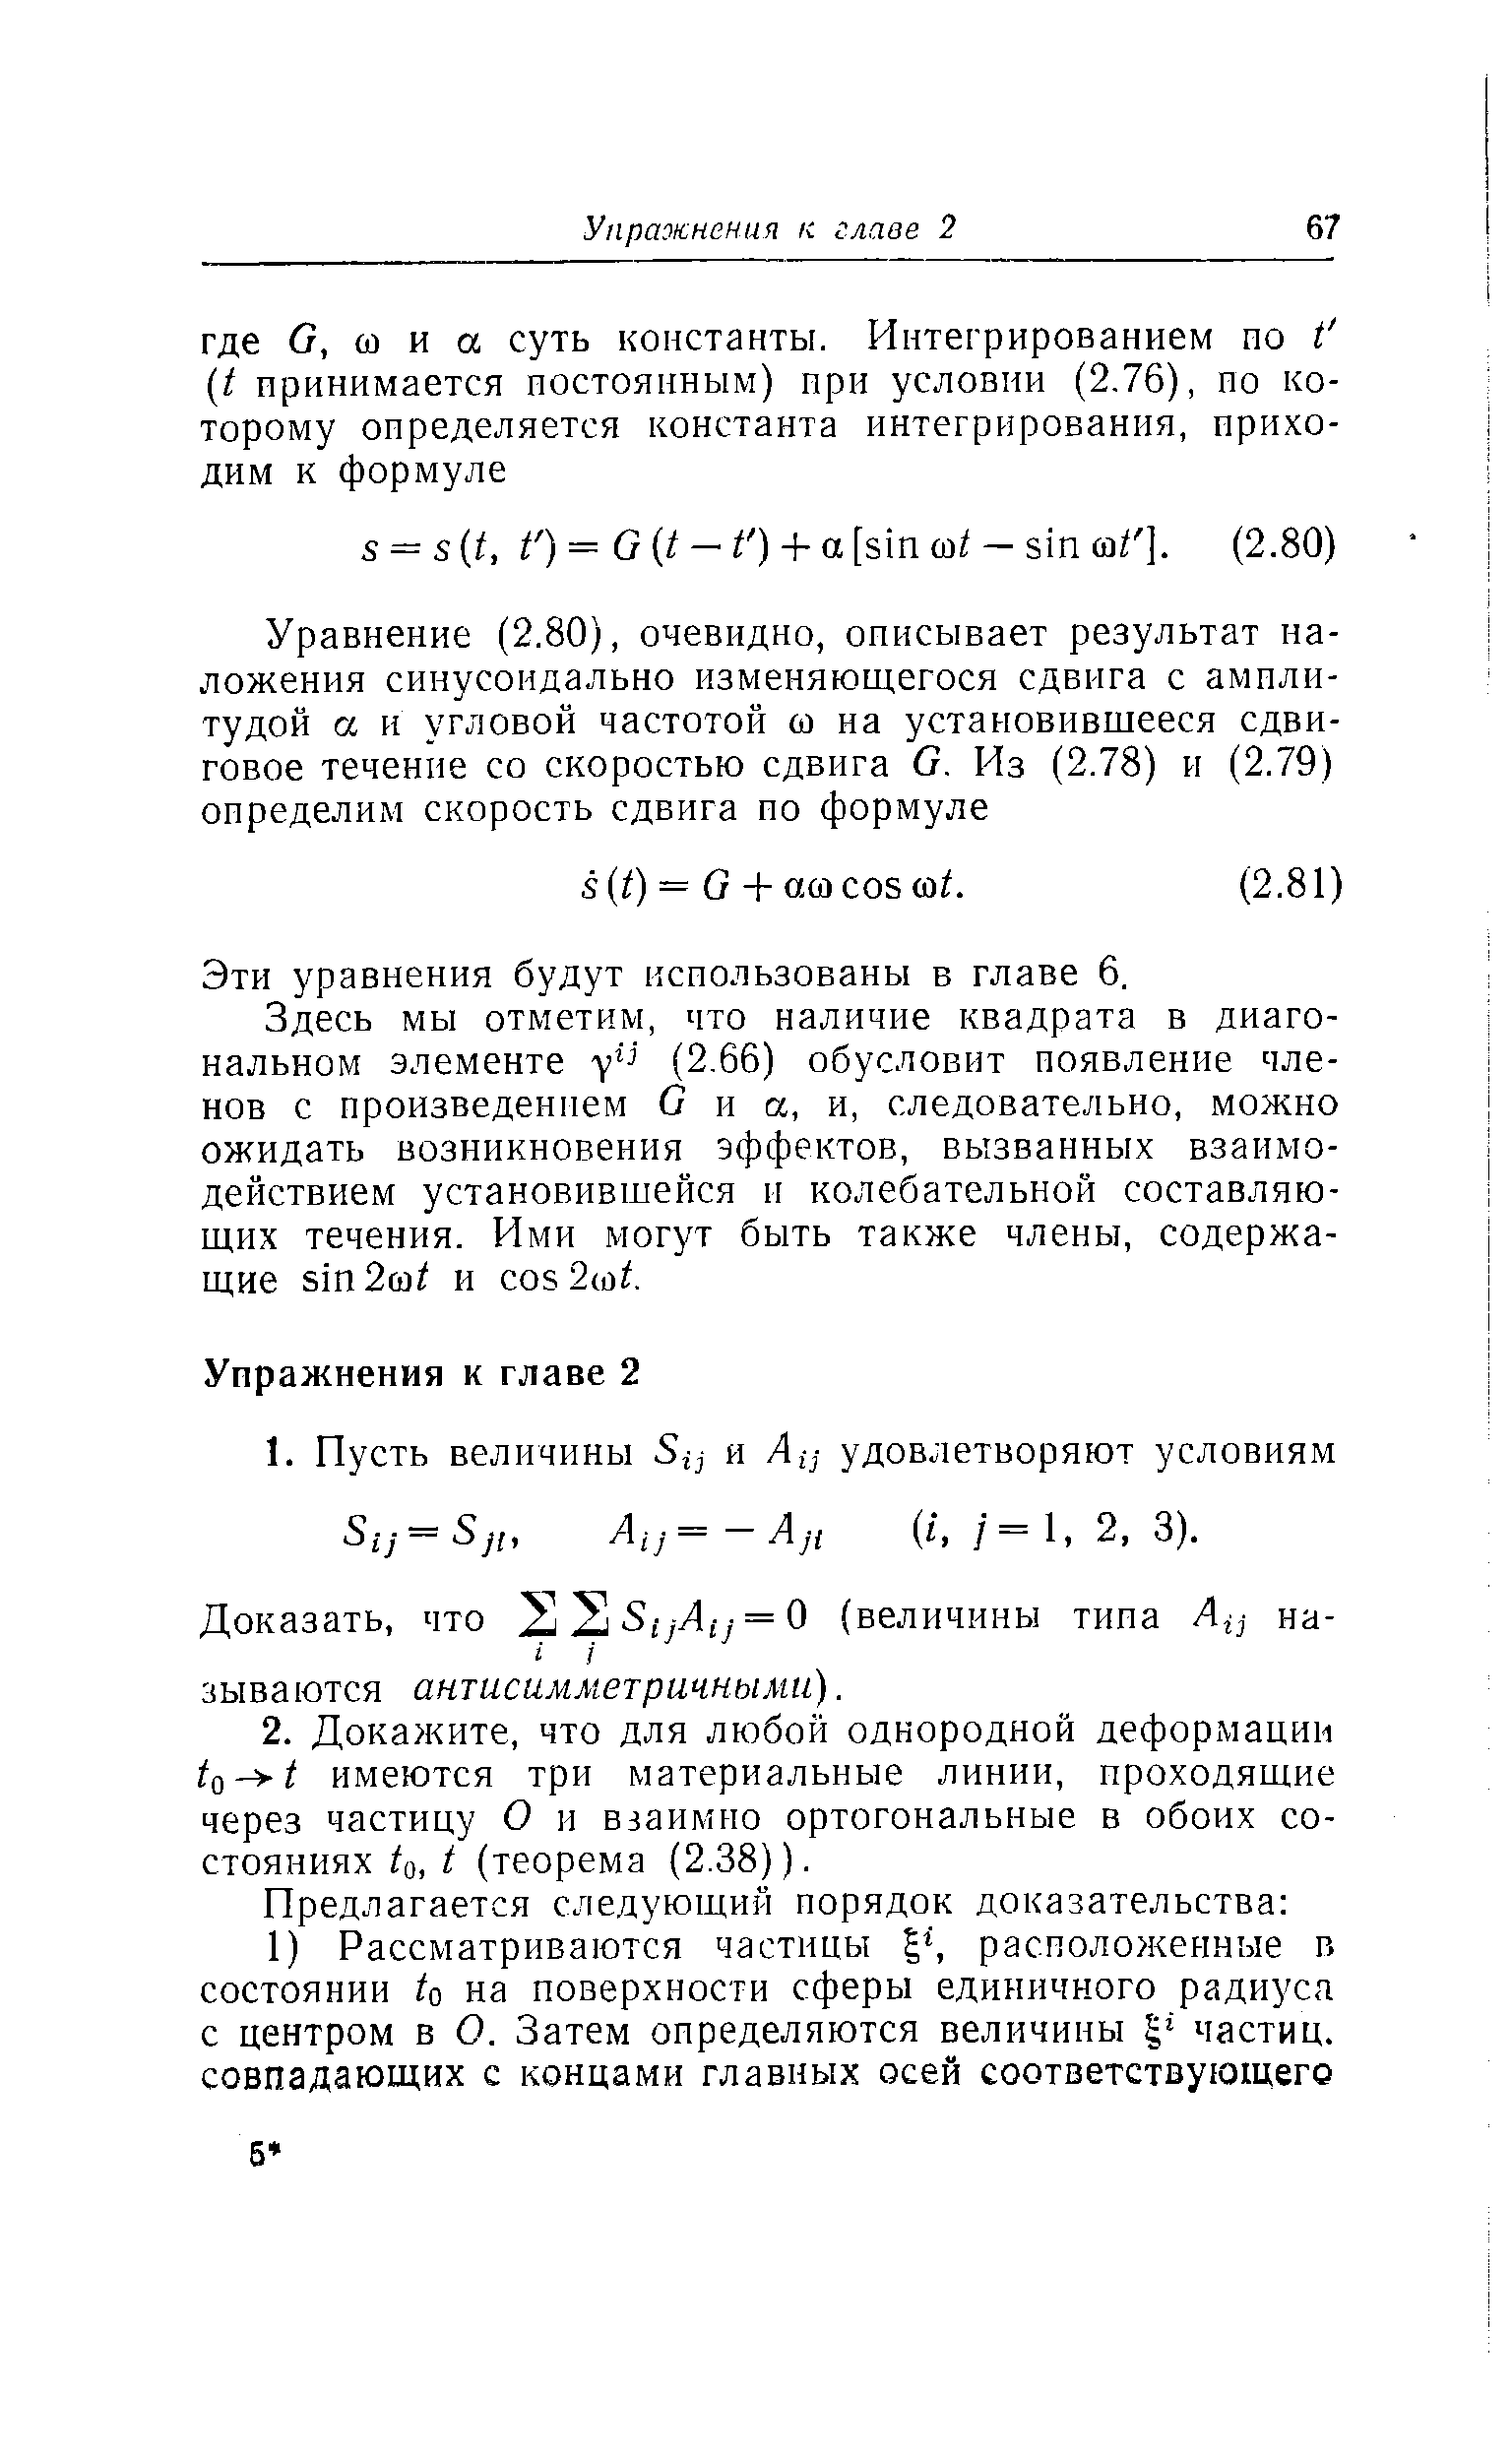 Эти уравнения будут использованы в главе 6.
